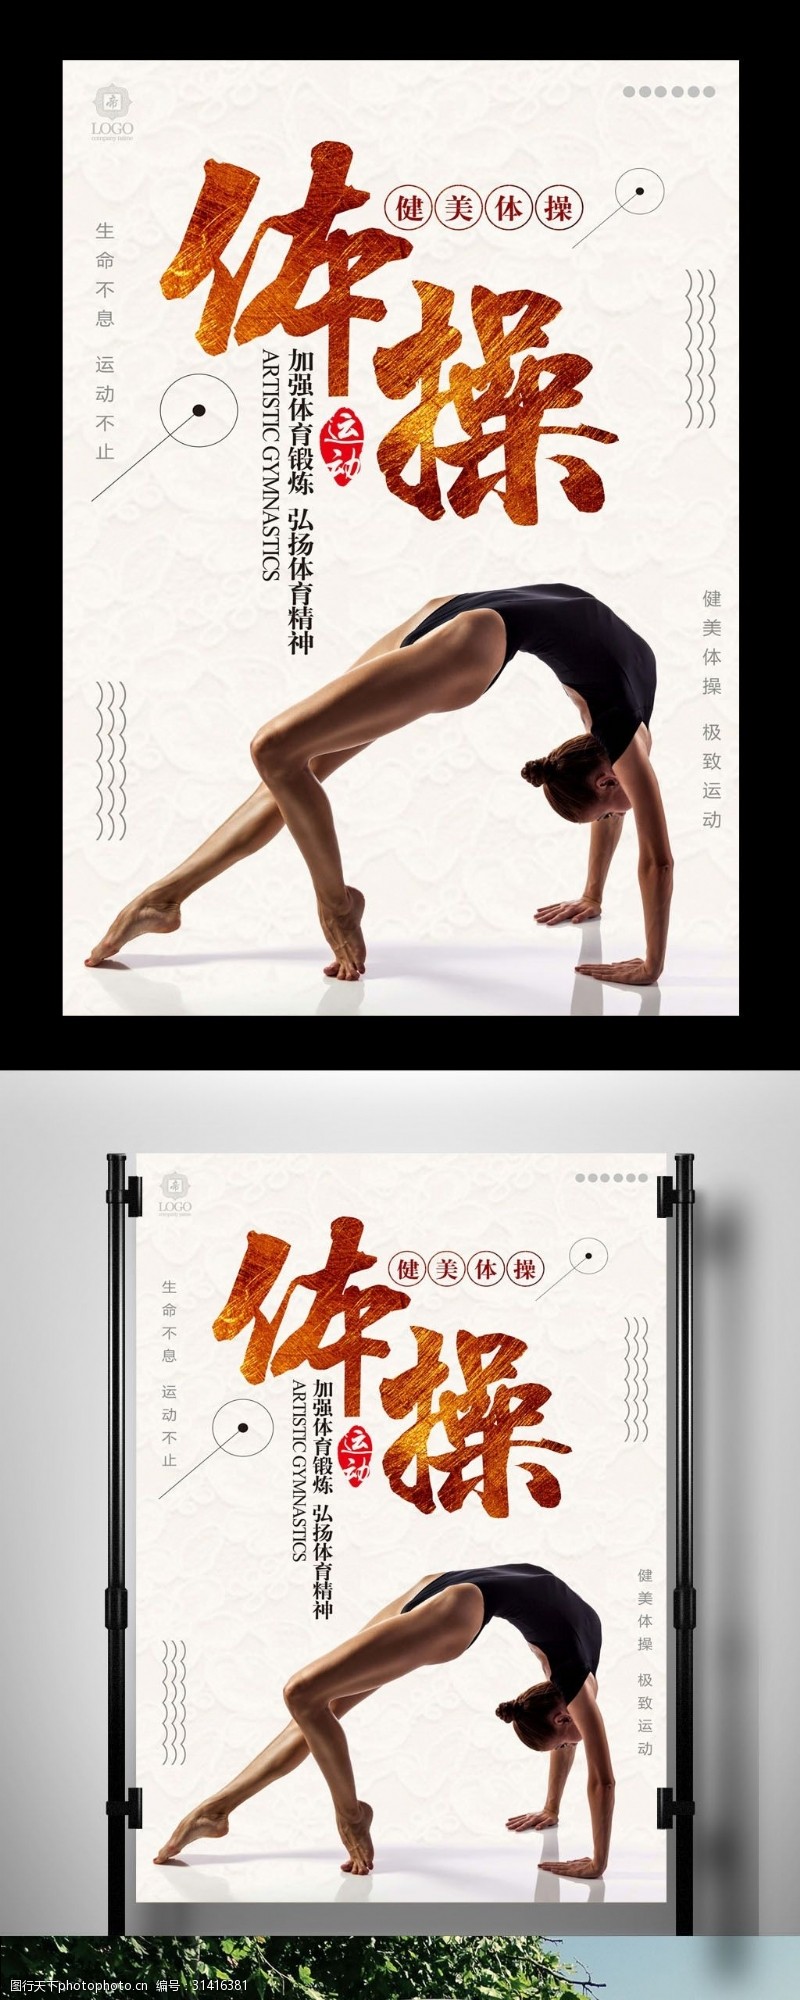 体操舞蹈简约体操运动海报设计宣传